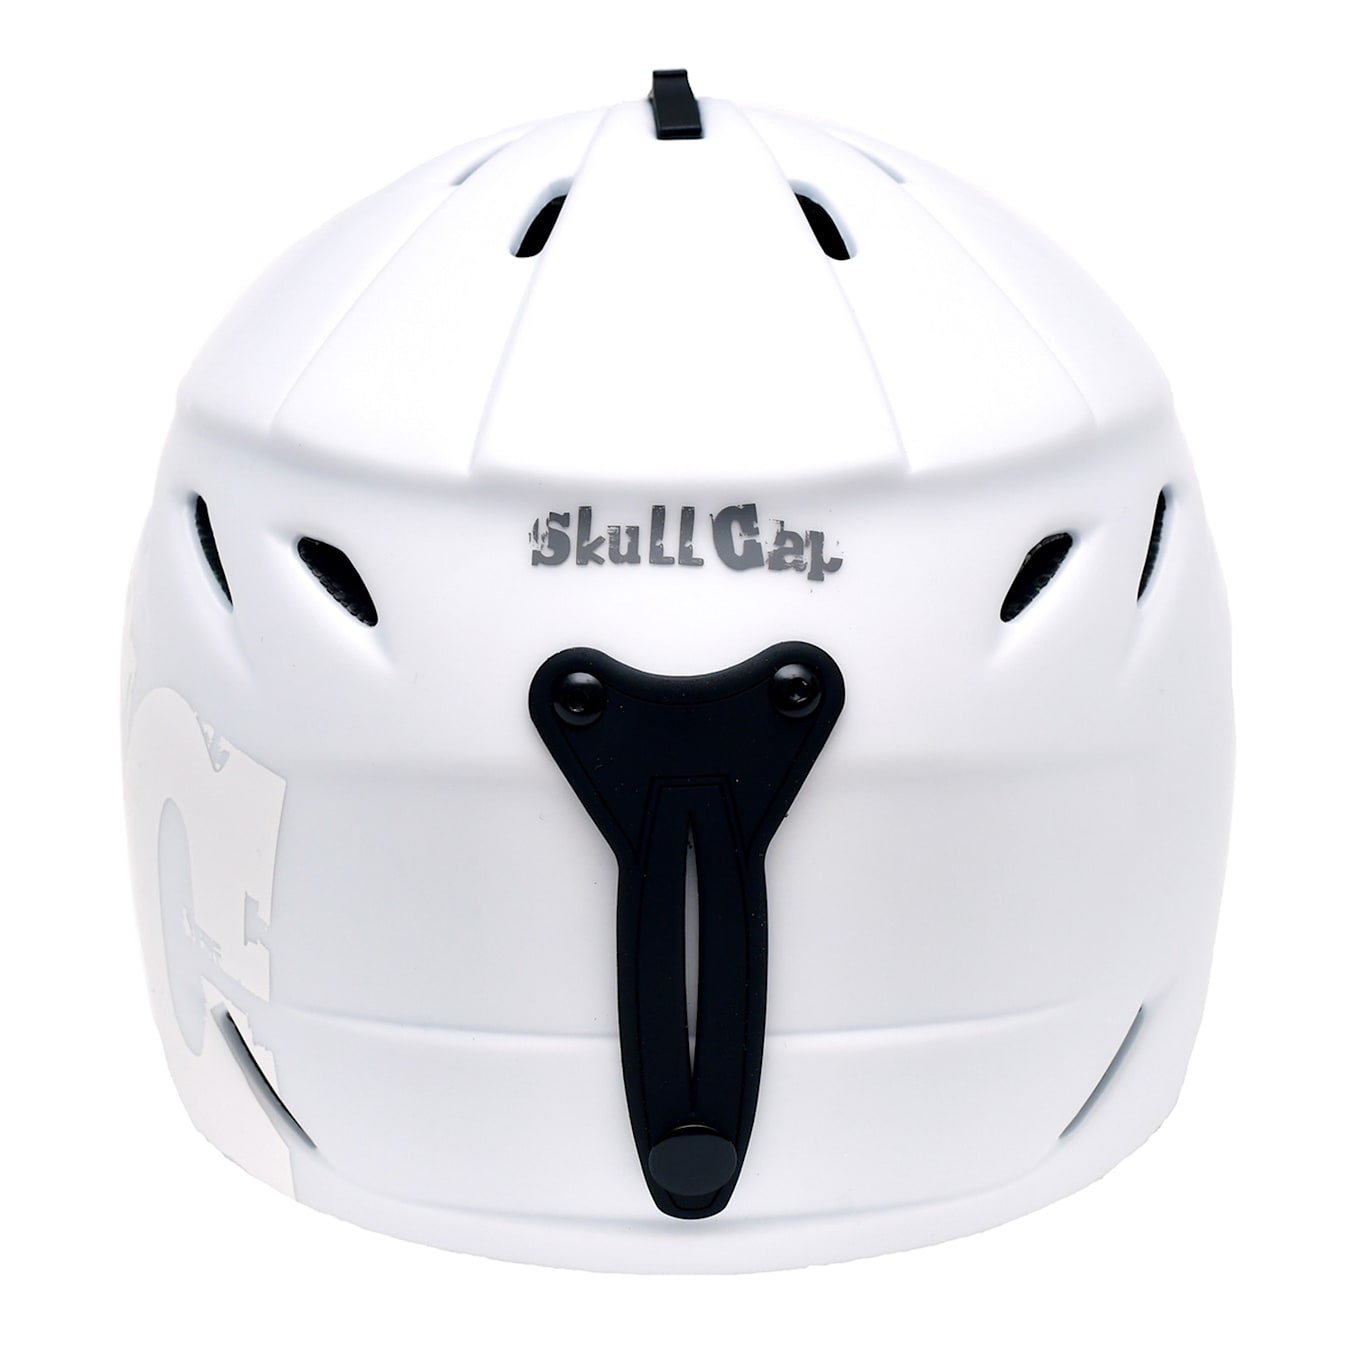 Casco de esquí, casco de snowboard para jóvenes/adultos, sistema de  ventilación de tamaño ajustable, casco deportivo para hombres y mujeres